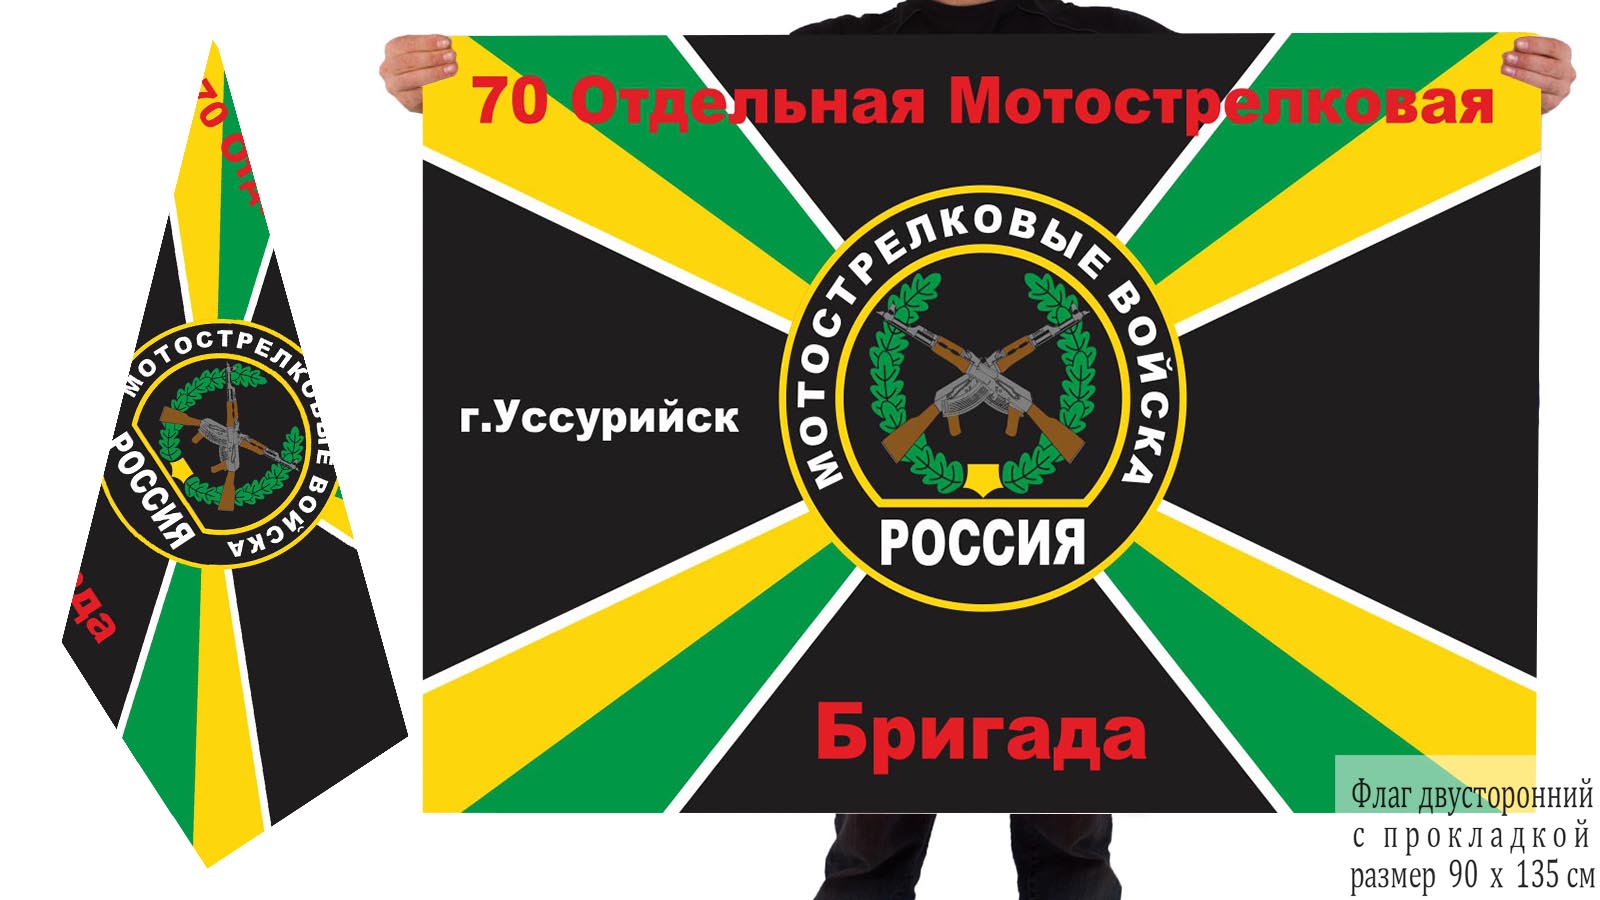 Двусторонний флаг 70 отдельной бригады мотострелков РФ